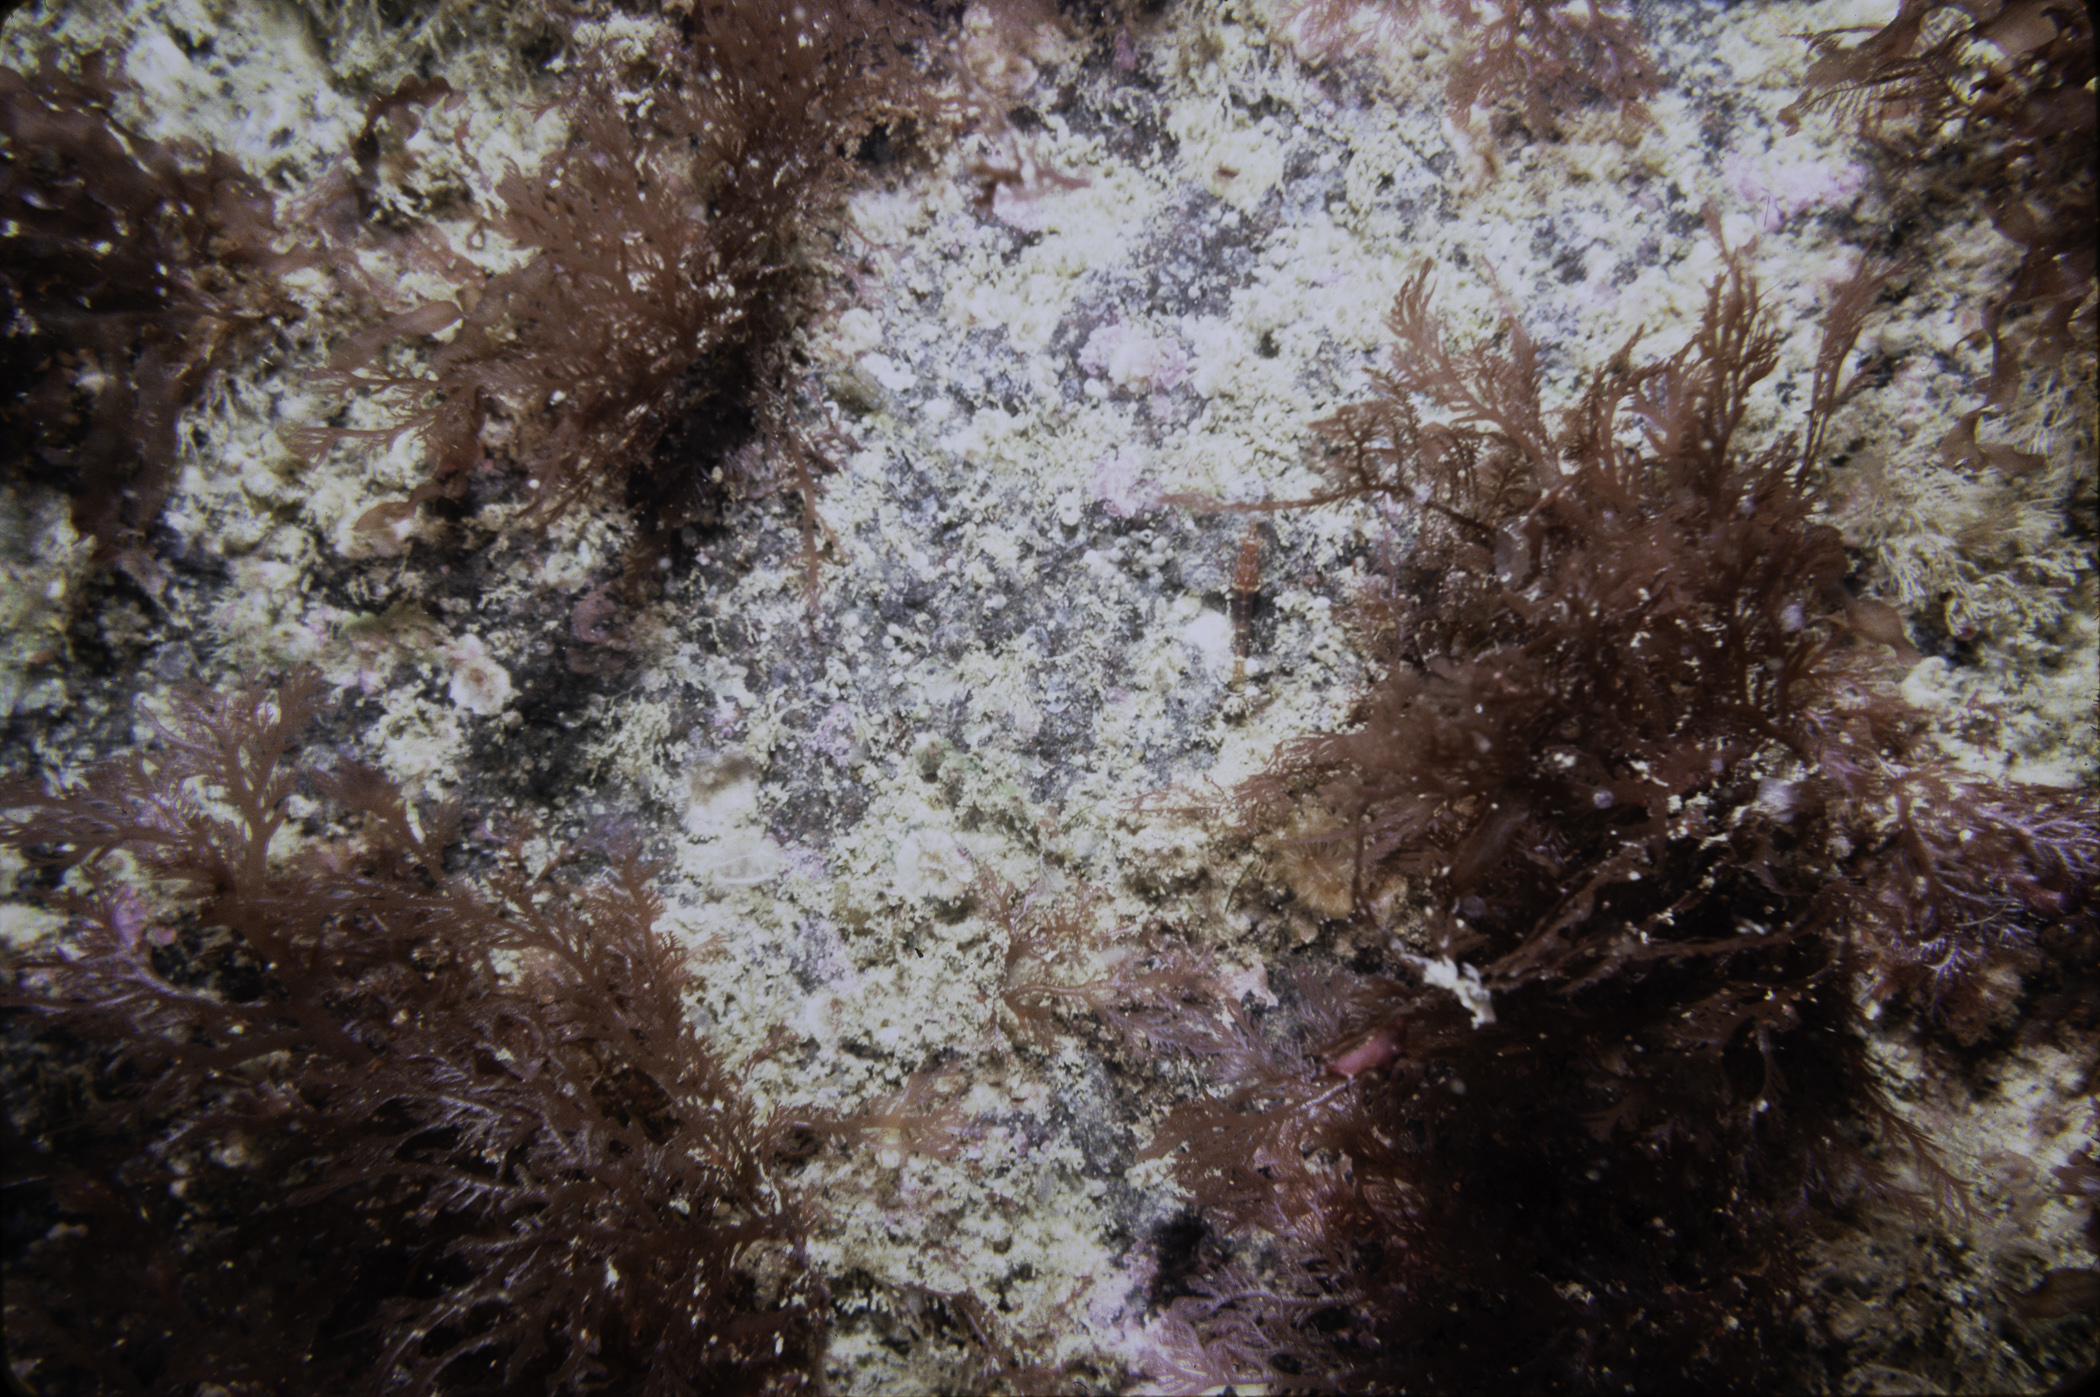 Plocamium cartilagineum. Site: S Side Black Rock, Skerries, Portrush. 